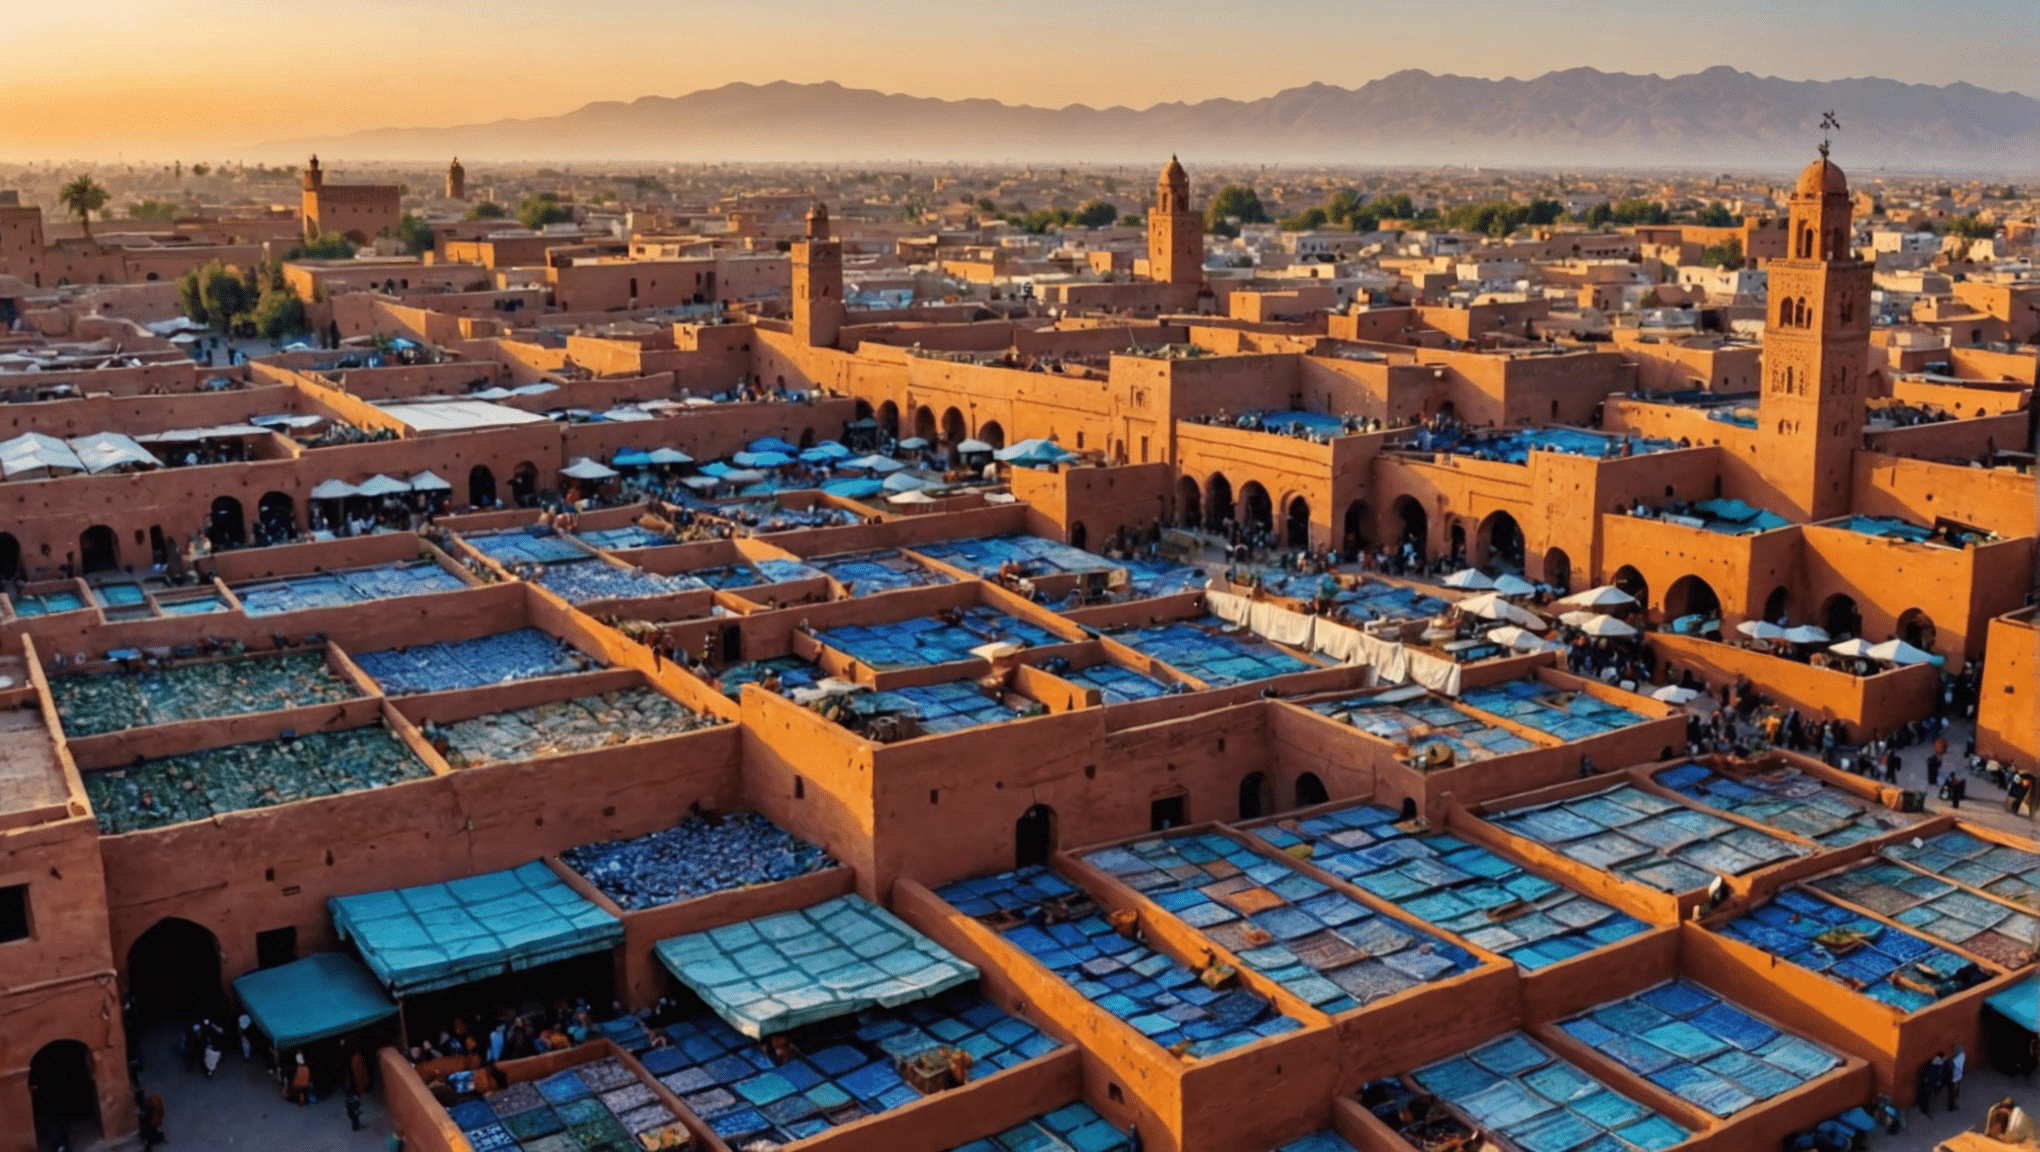 découvrez le top 10 des activités incontournables à Marrakech recommandées par un expert local et profitez au maximum de votre visite dans cette ville dynamique.